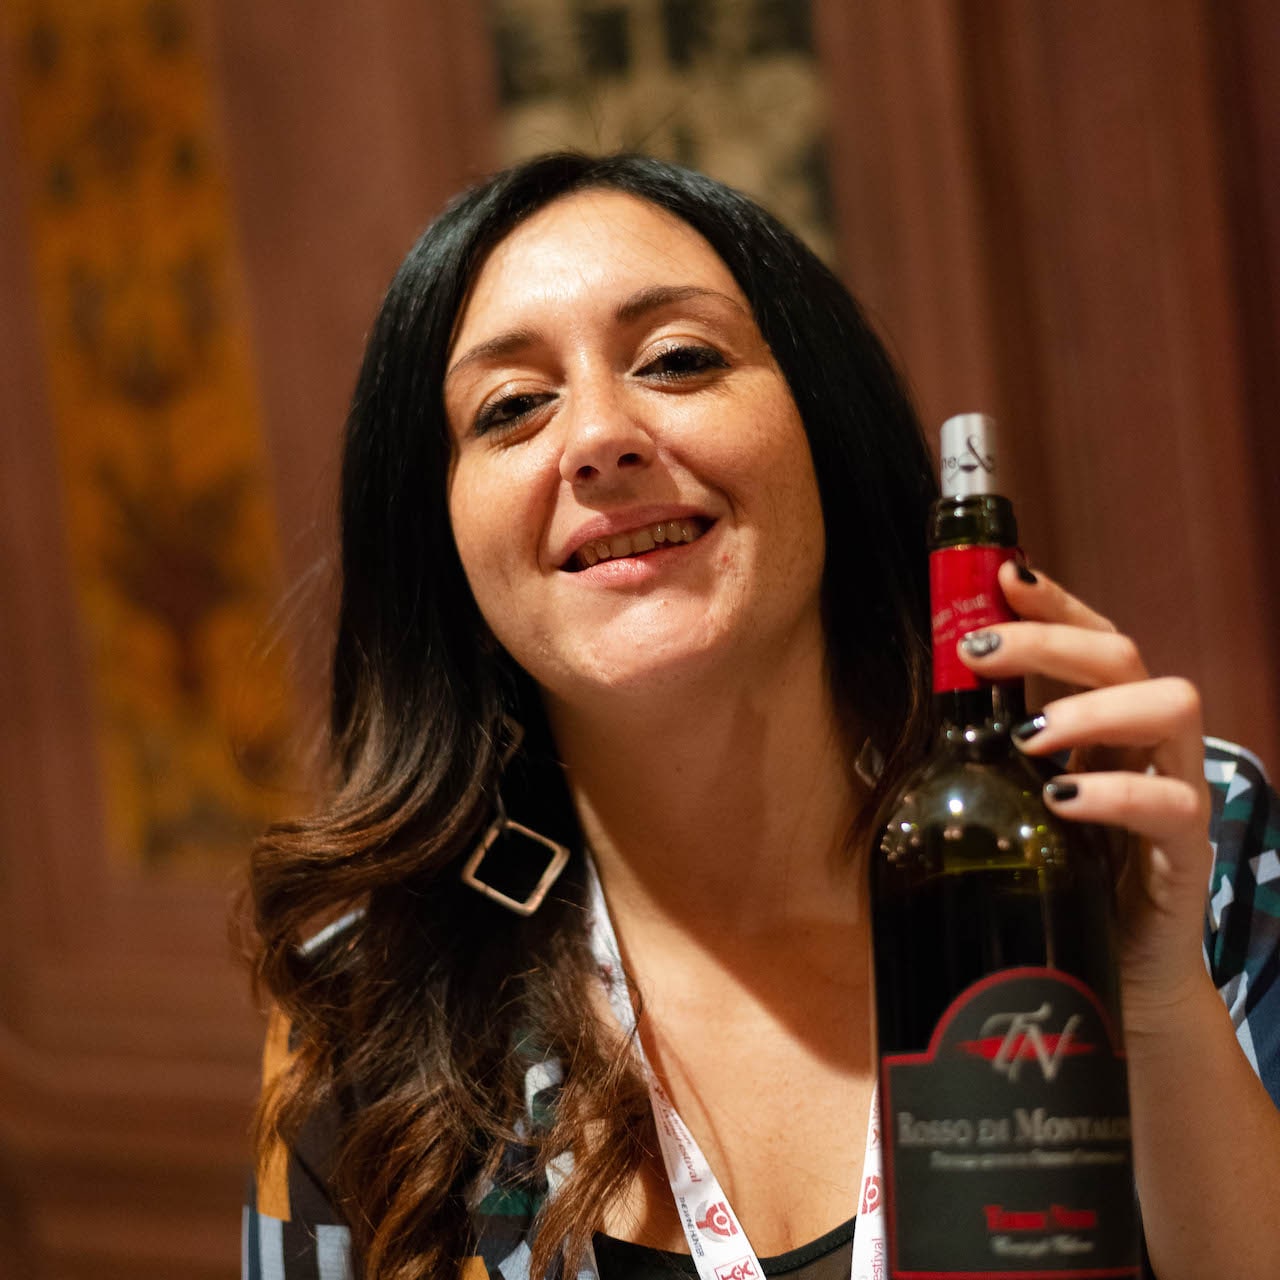 Francesca Vallone e il suo Brunello Terre Nere a Wine&siena 2019